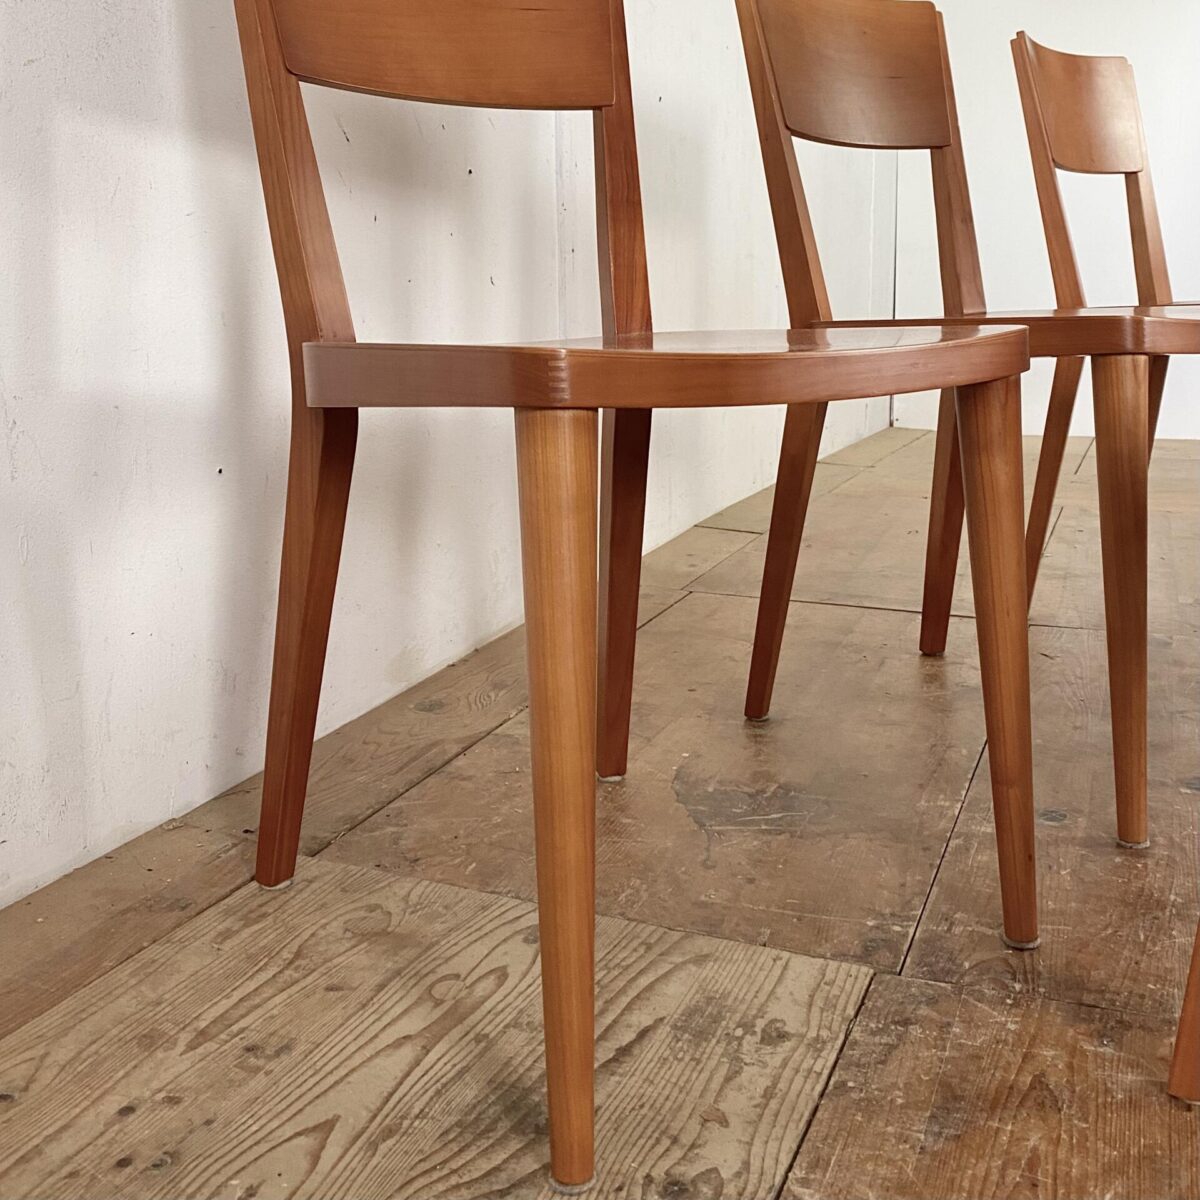 Deuxieme.shop italian wood chairs. 6er Set Esszimmer Stühle aus Kirschbaumholz. Die Stühle sind in gutem Zustand mit minimalen Gebrauchsspuren. Die Stühle sind Qualitativ Verarbeitet, ein Hersteller ist uns nicht bekannt. 